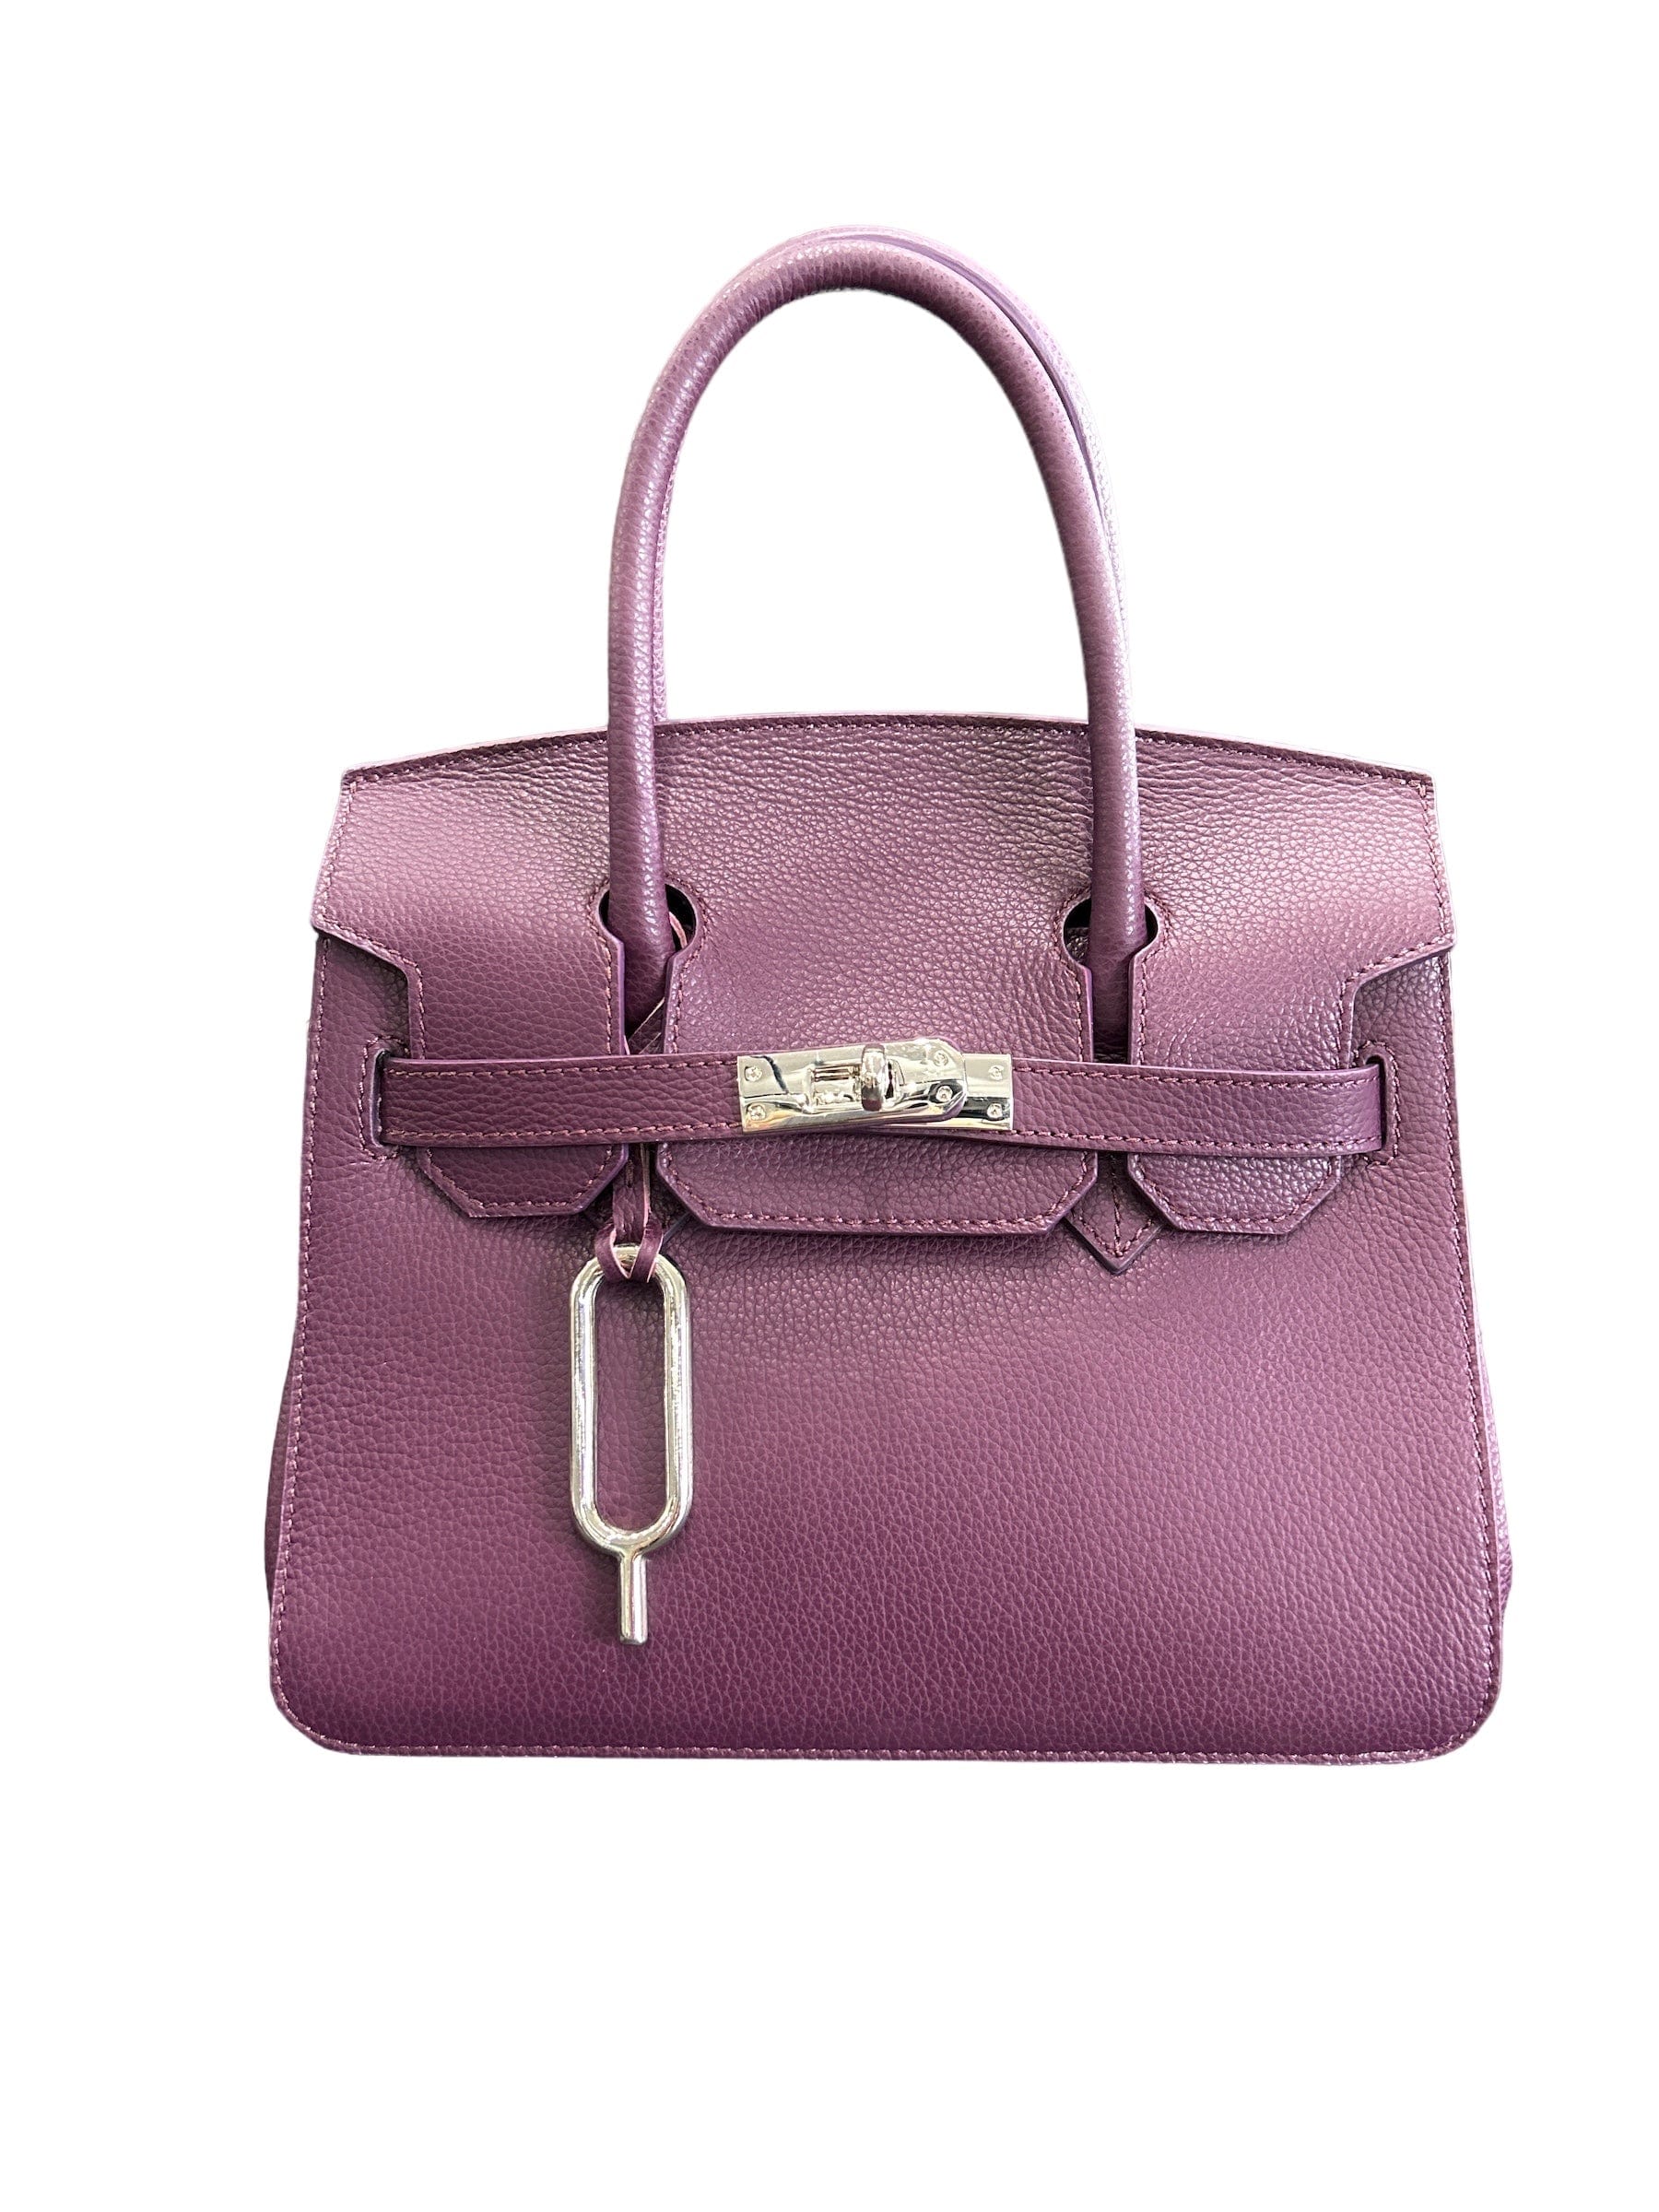 Purple Lisbona Small Satchel Bag 2 handles & Long strap - Selleria Veneta